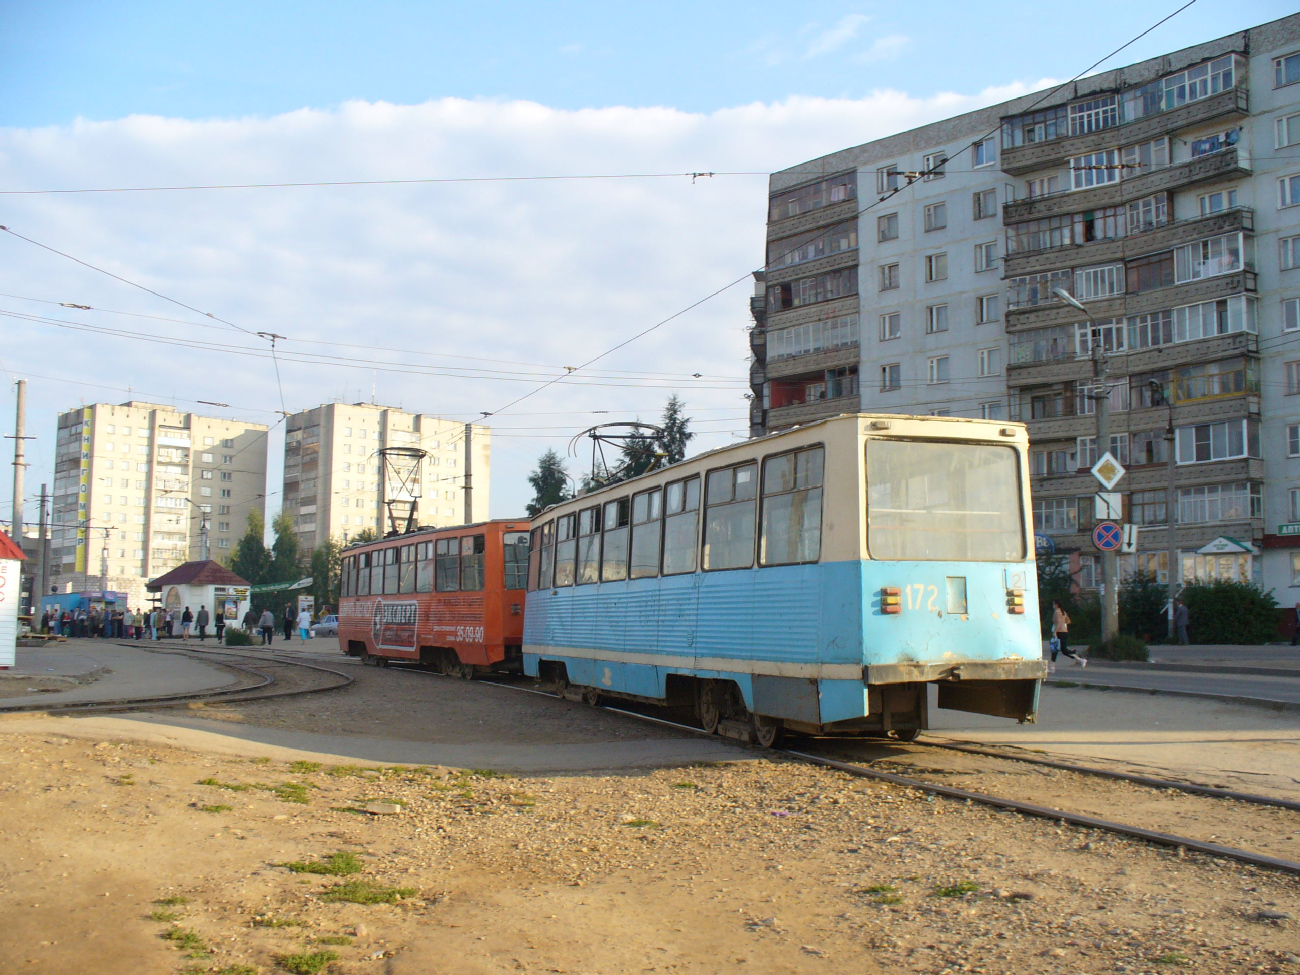 Смоленск, 71-605 (КТМ-5М3) № 172